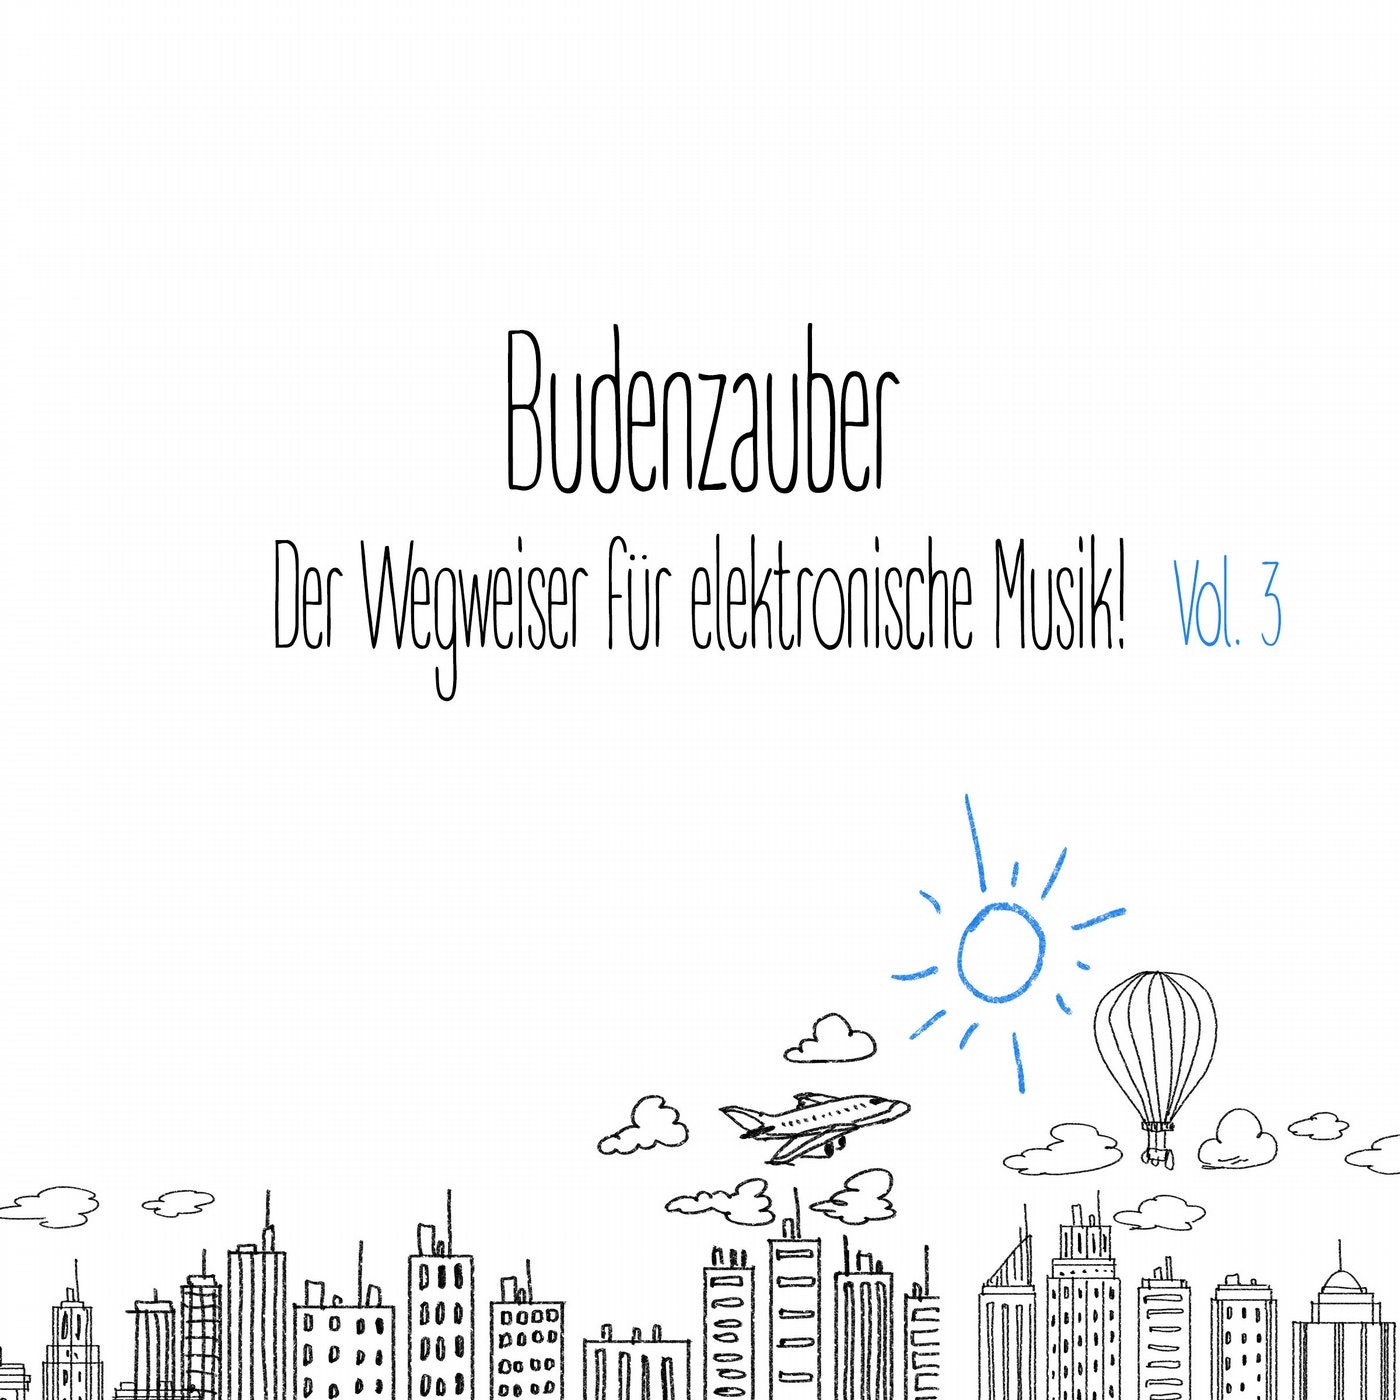 Budenzauber, Vol. 3 - Der Wegweiser fur elektronische Musik